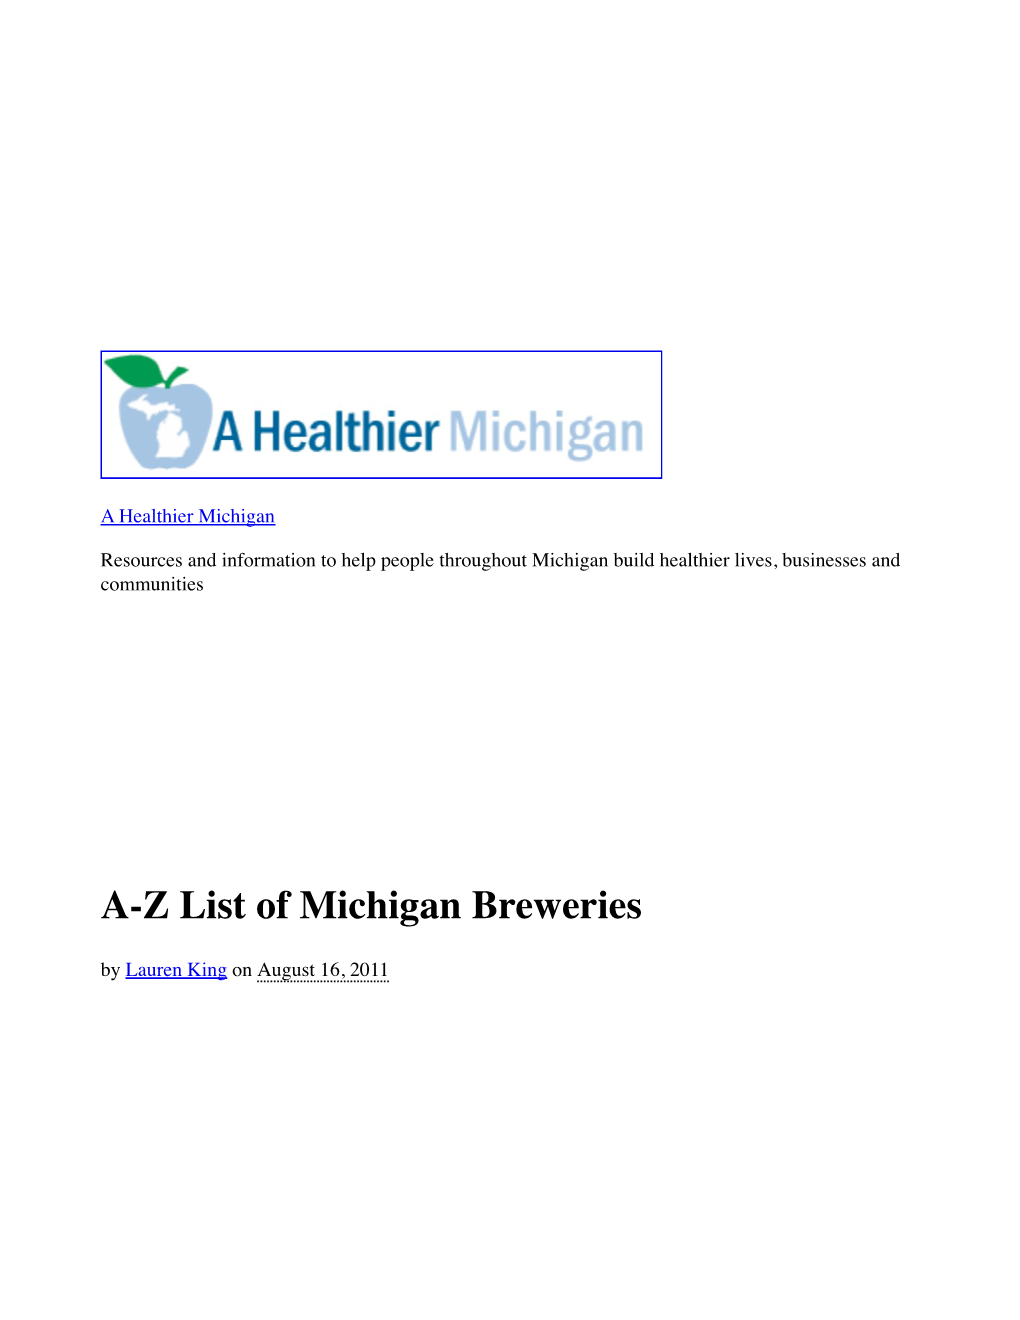 AZ List of Michigan Breweries